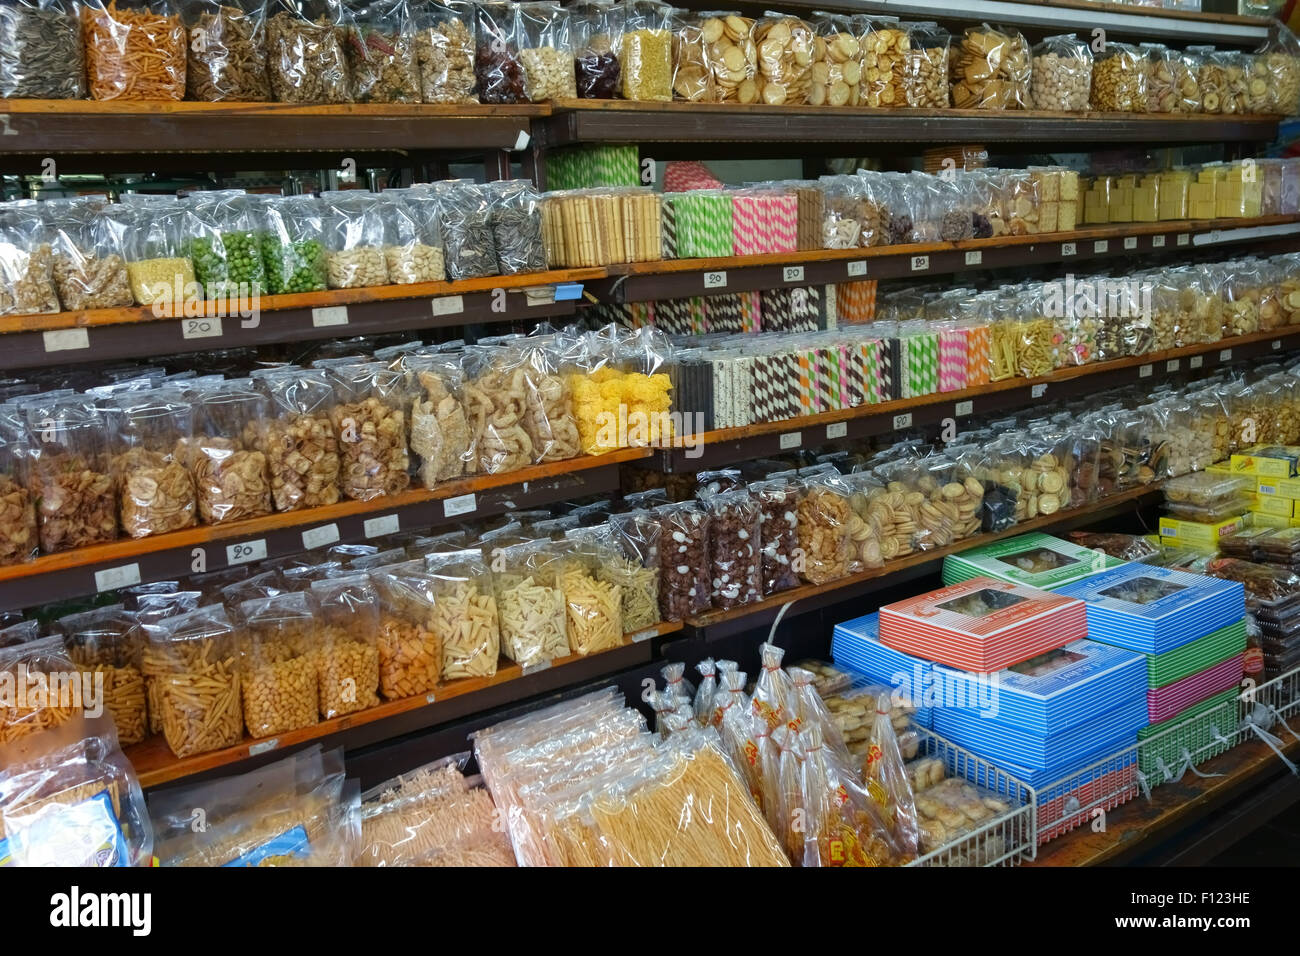 Une variété de produits en sachets, boîtes et pots dans un étal dans un marché alimentaire de Bangkok, Thaïlande Banque D'Images